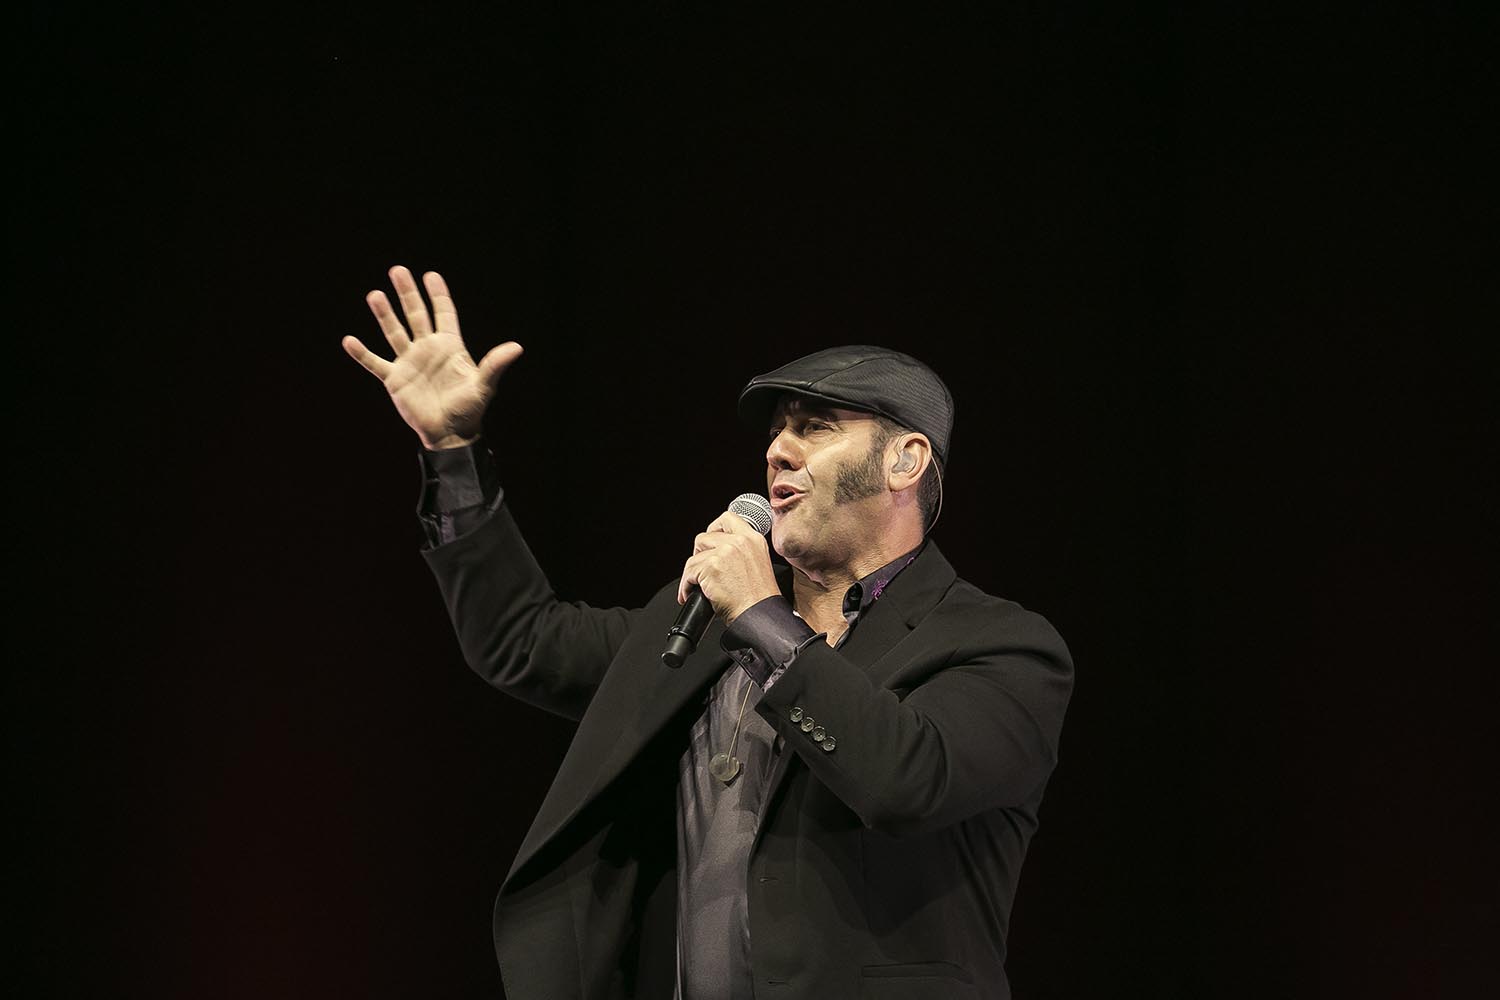 Barcelona 06/07/2018 Paco Candela, cantante de Flamenco, en el Auditori del Forum.Fotografia de Joan Cortadellas